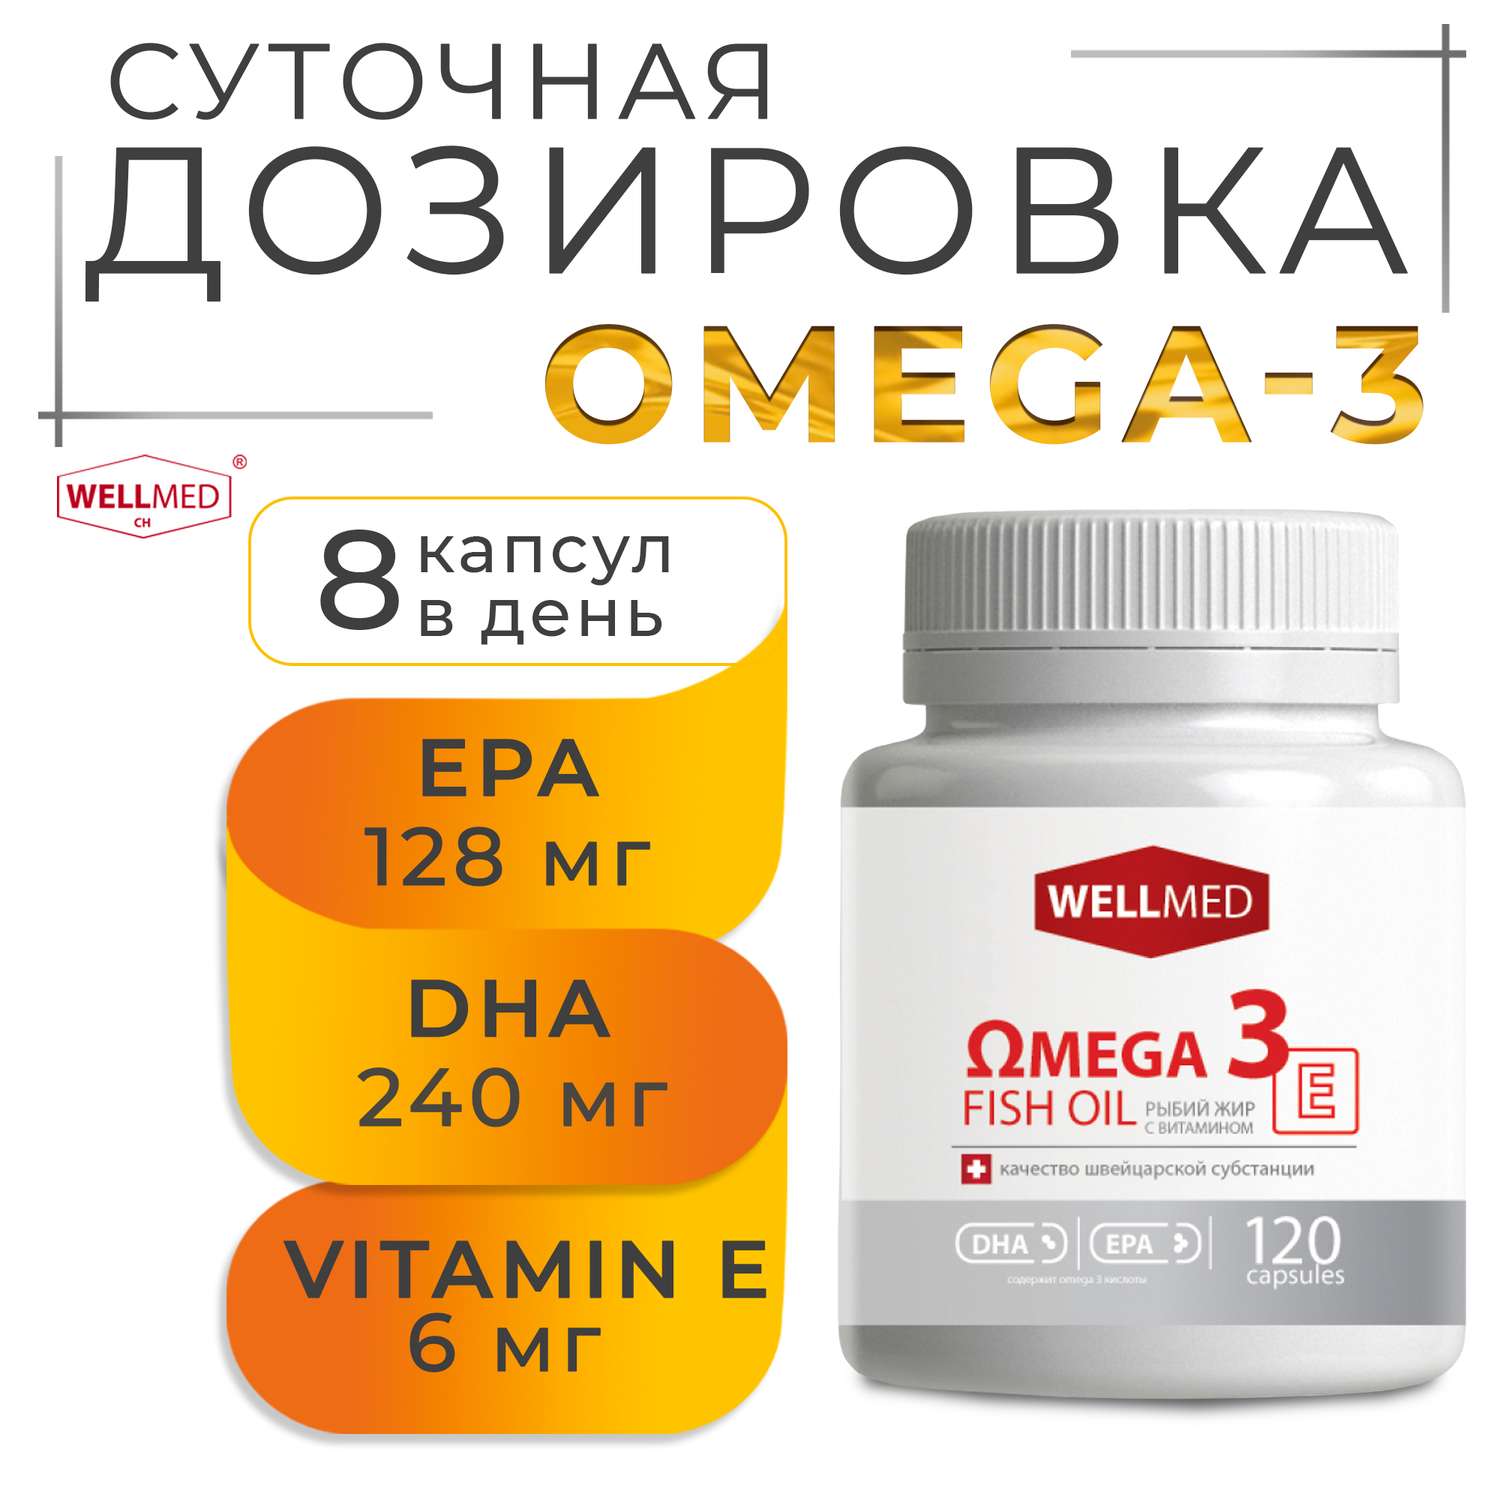 Концентрат Omega 3 для женщин WELLMED Рыбий жир с витамином E 120 капсул Fish oil - фото 2